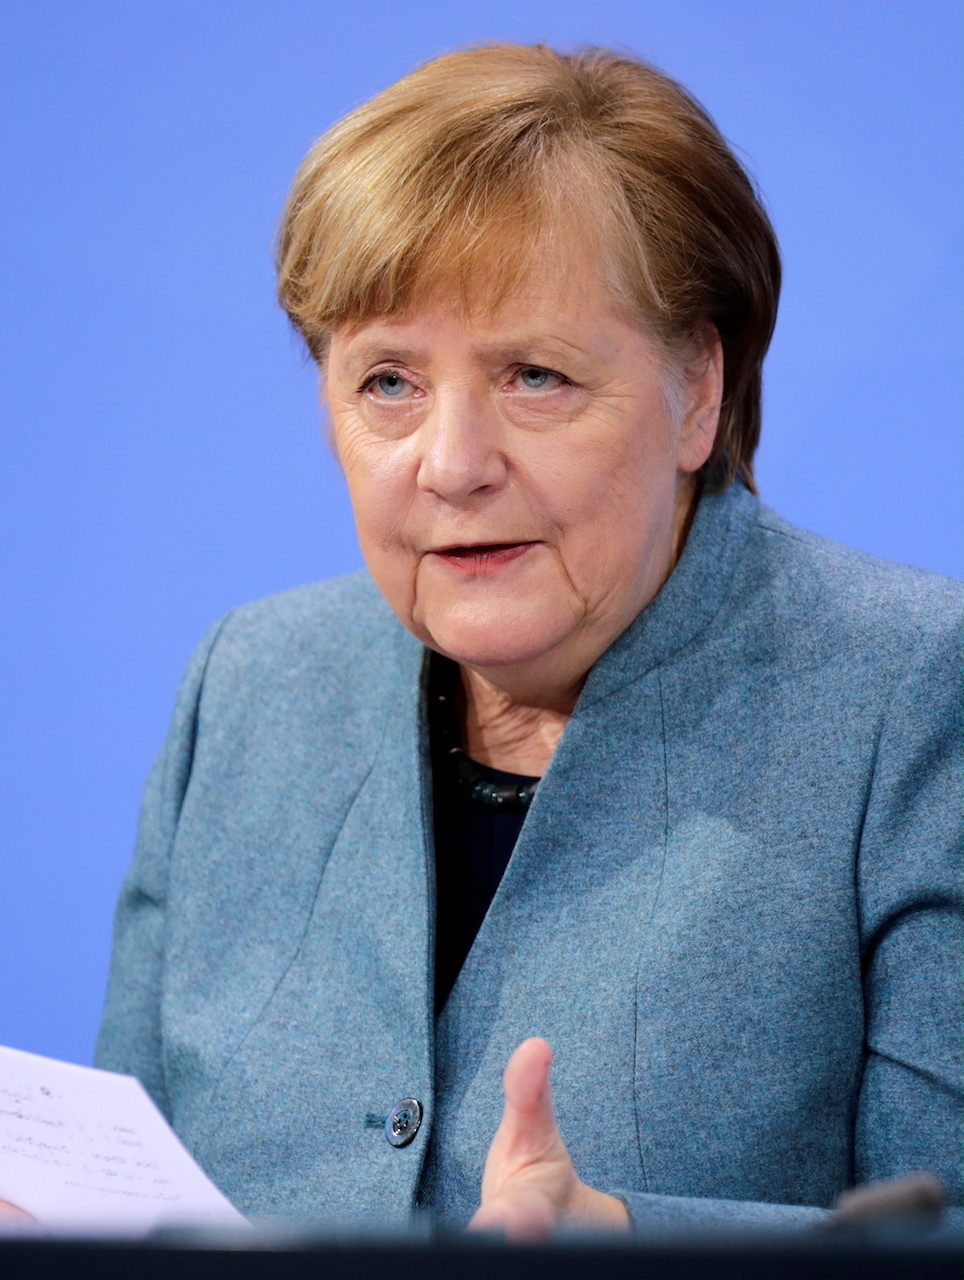 20210303-image-dpa-mb-Angela Merkel